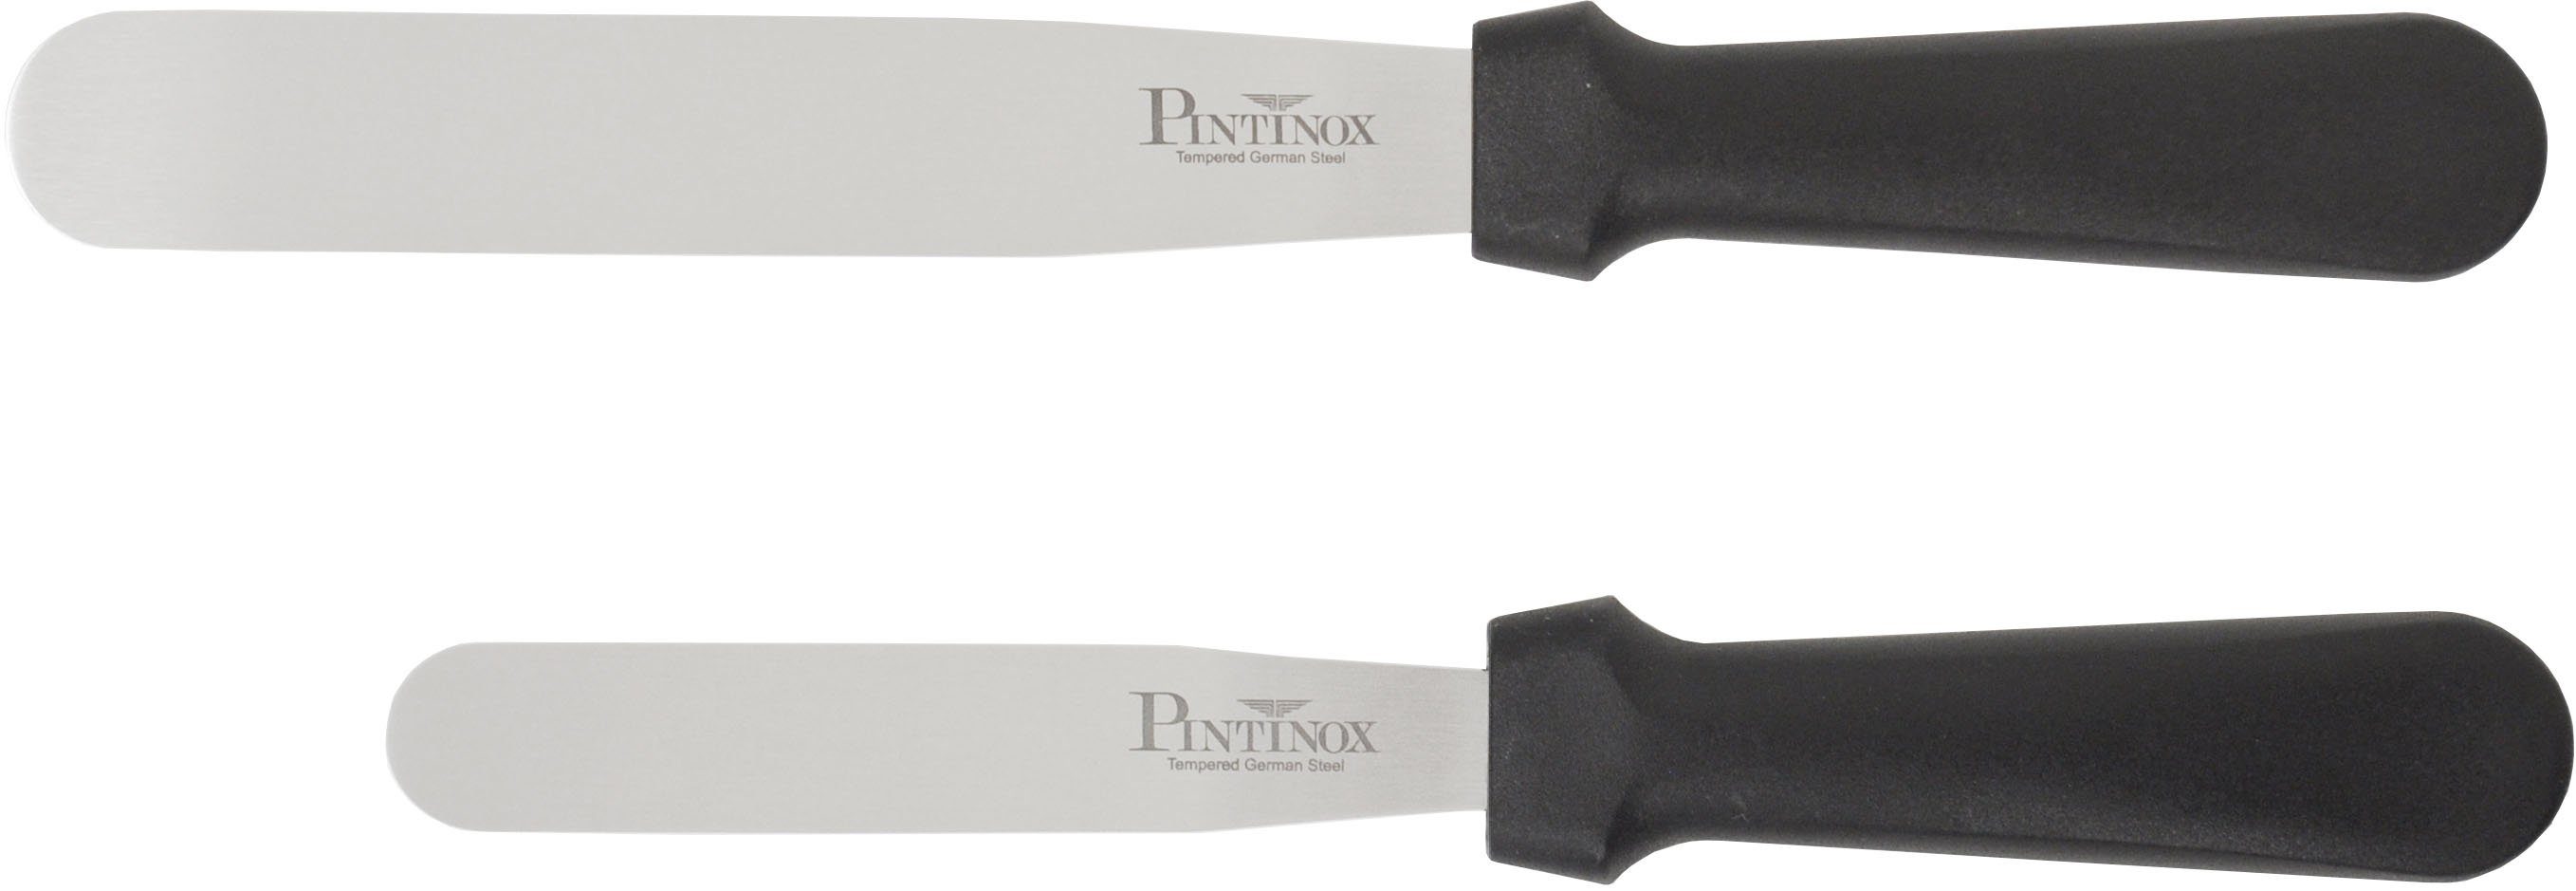 PINTINOX Streichpalette Professional, Edelstahl, spülmaschinengeeinget, cm 1 10,5cm, Spatel 15,9 Spatel 1